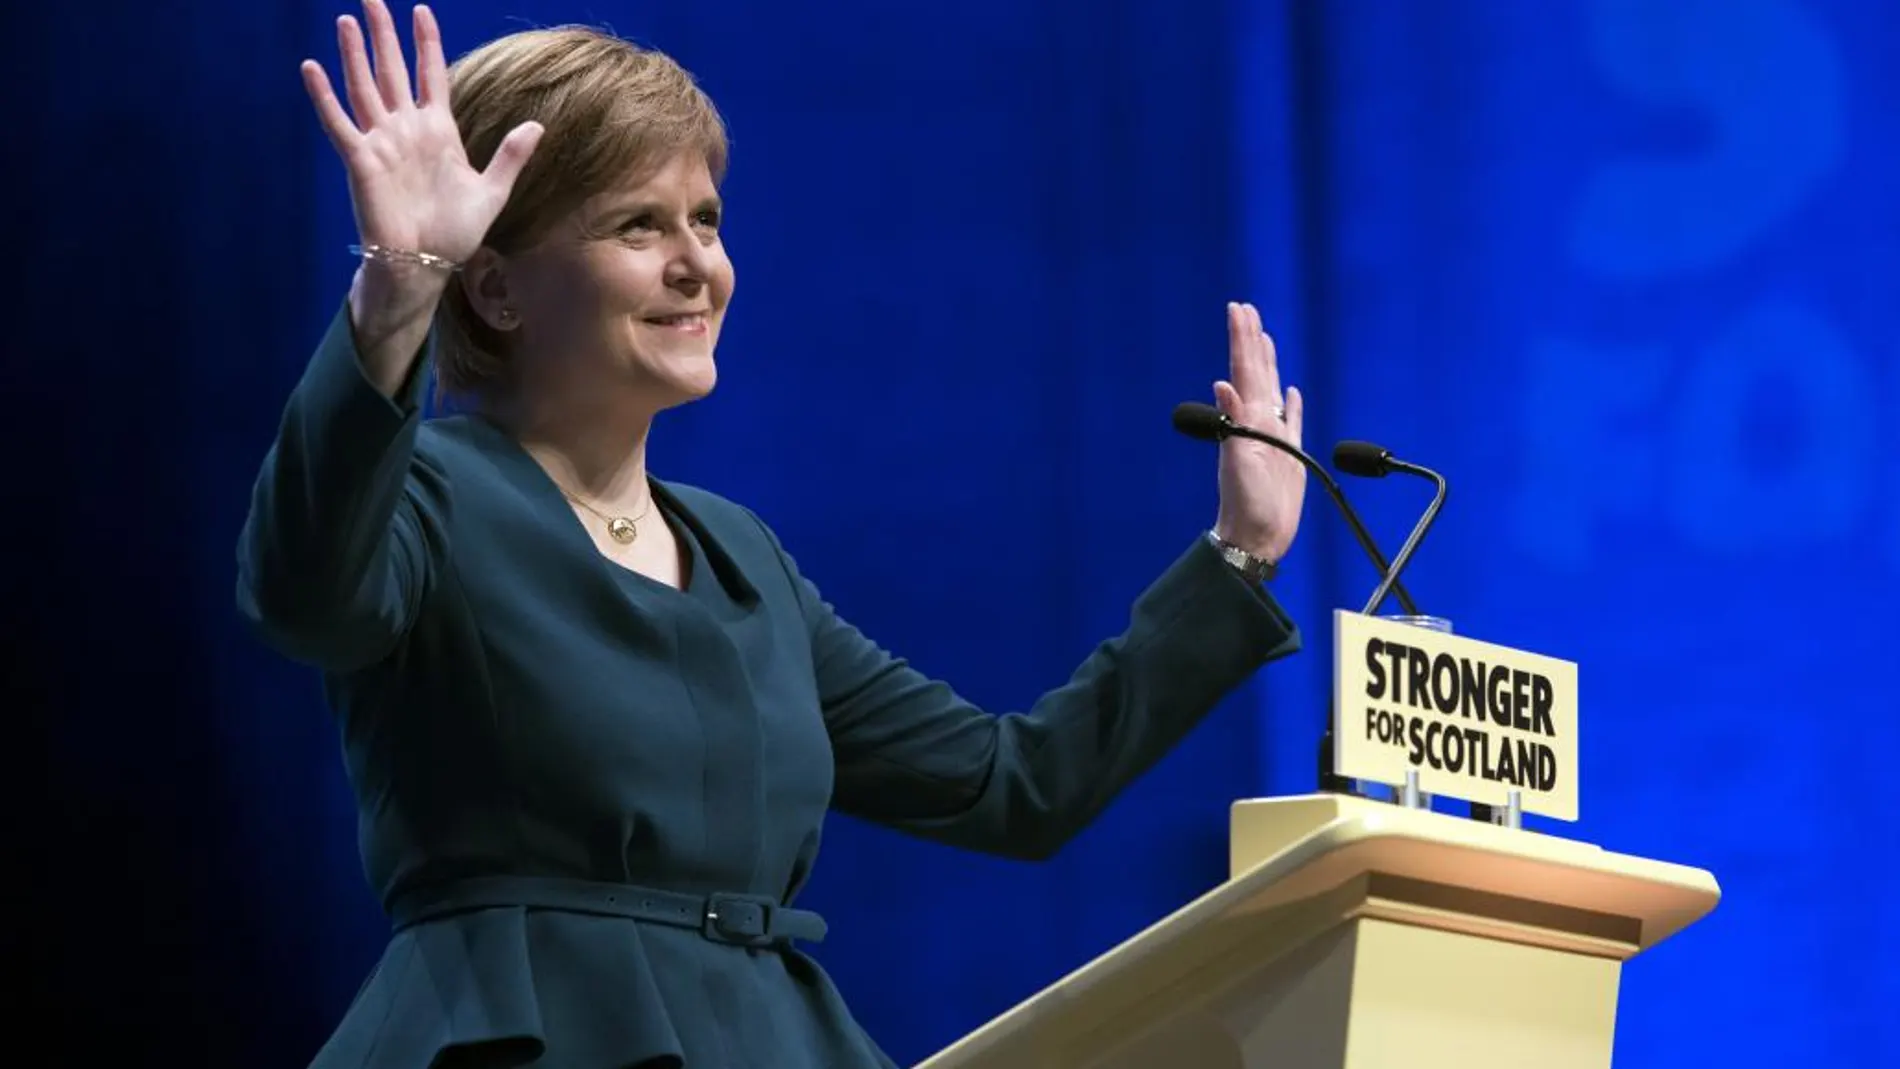 Nicola Sturgeon dice que debe defender los intereses de los escoceses antes de la salida de Reino Unido de la UE